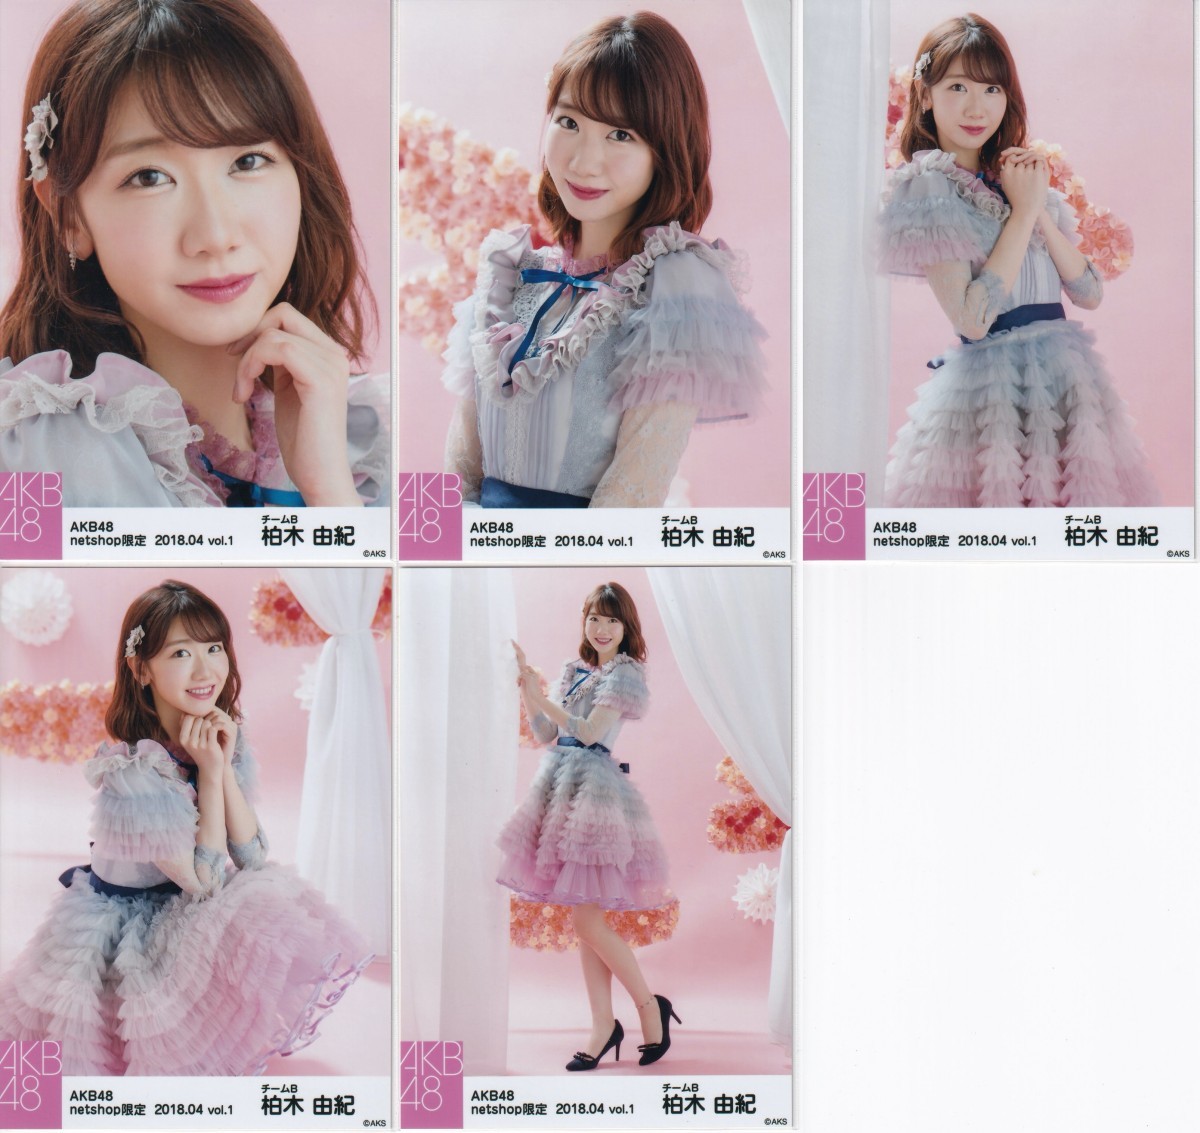 AKB48 柏木由紀 netshop限定 2018.04 vol.1 個別 生写真 5種コンプ 11月のアンクレット衣装_画像1